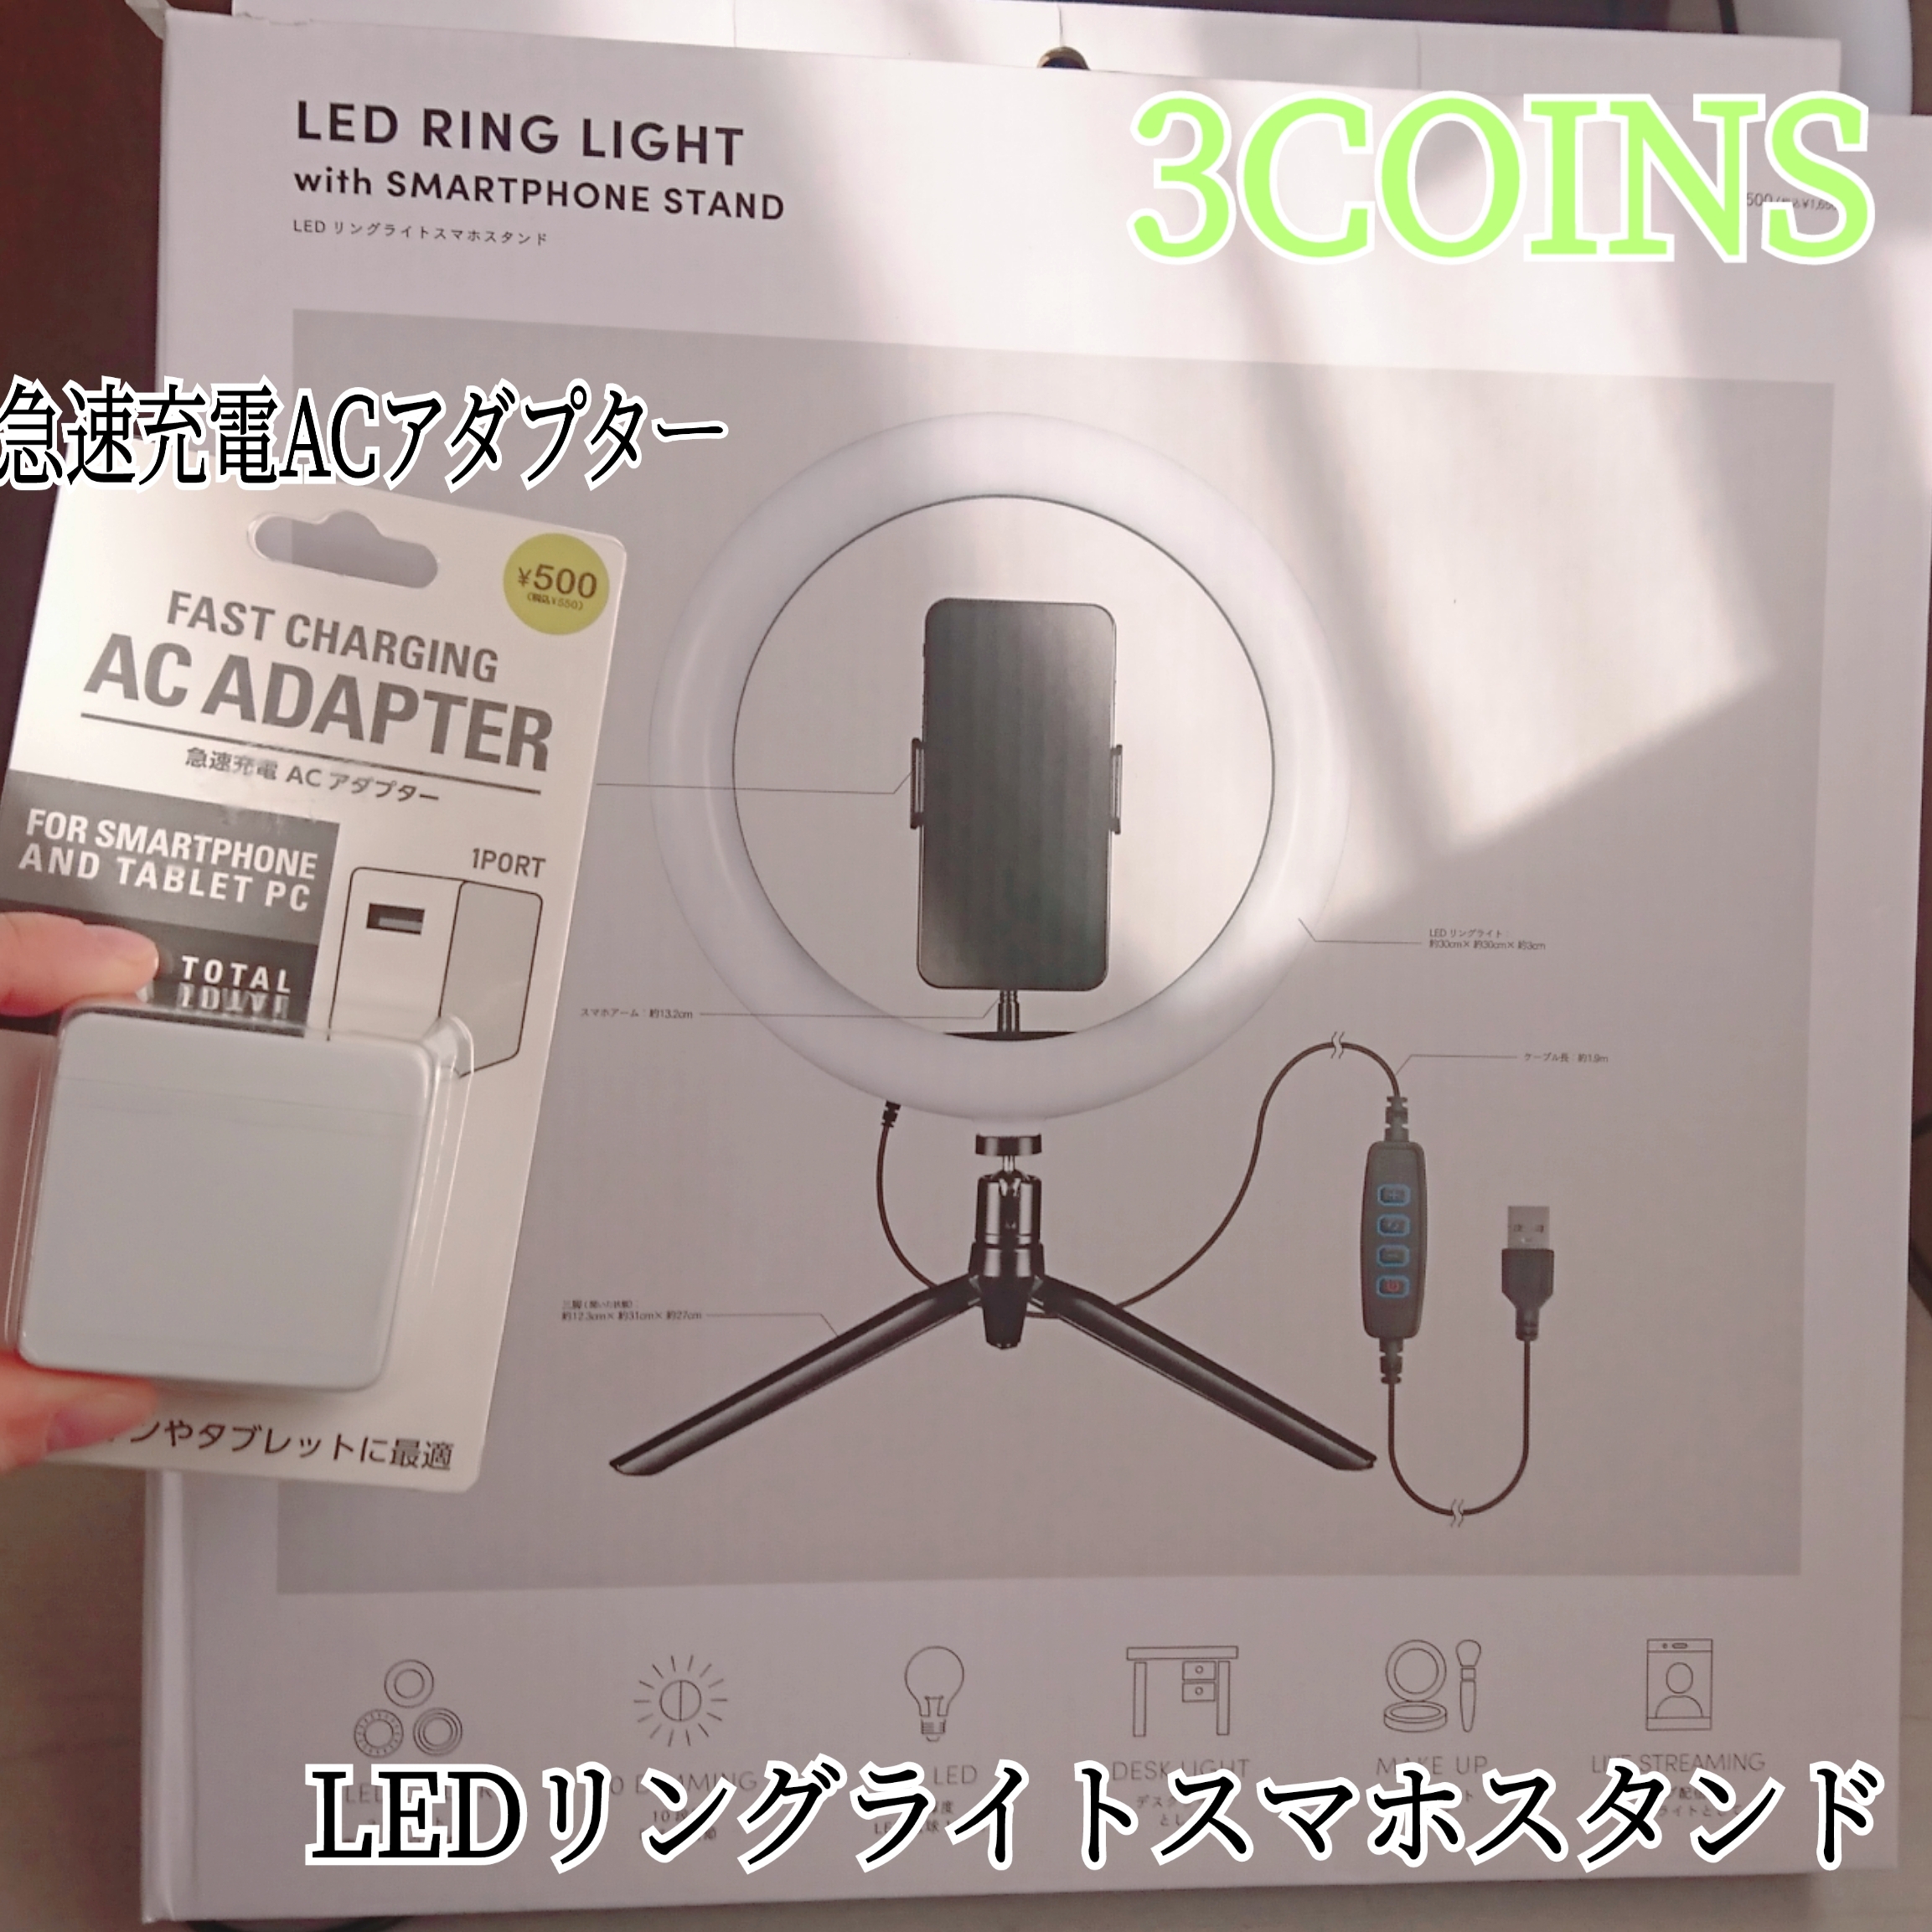 3COINS LEDリングライトスマホスタンドを使ったYuKaRi♡さんのクチコミ画像1